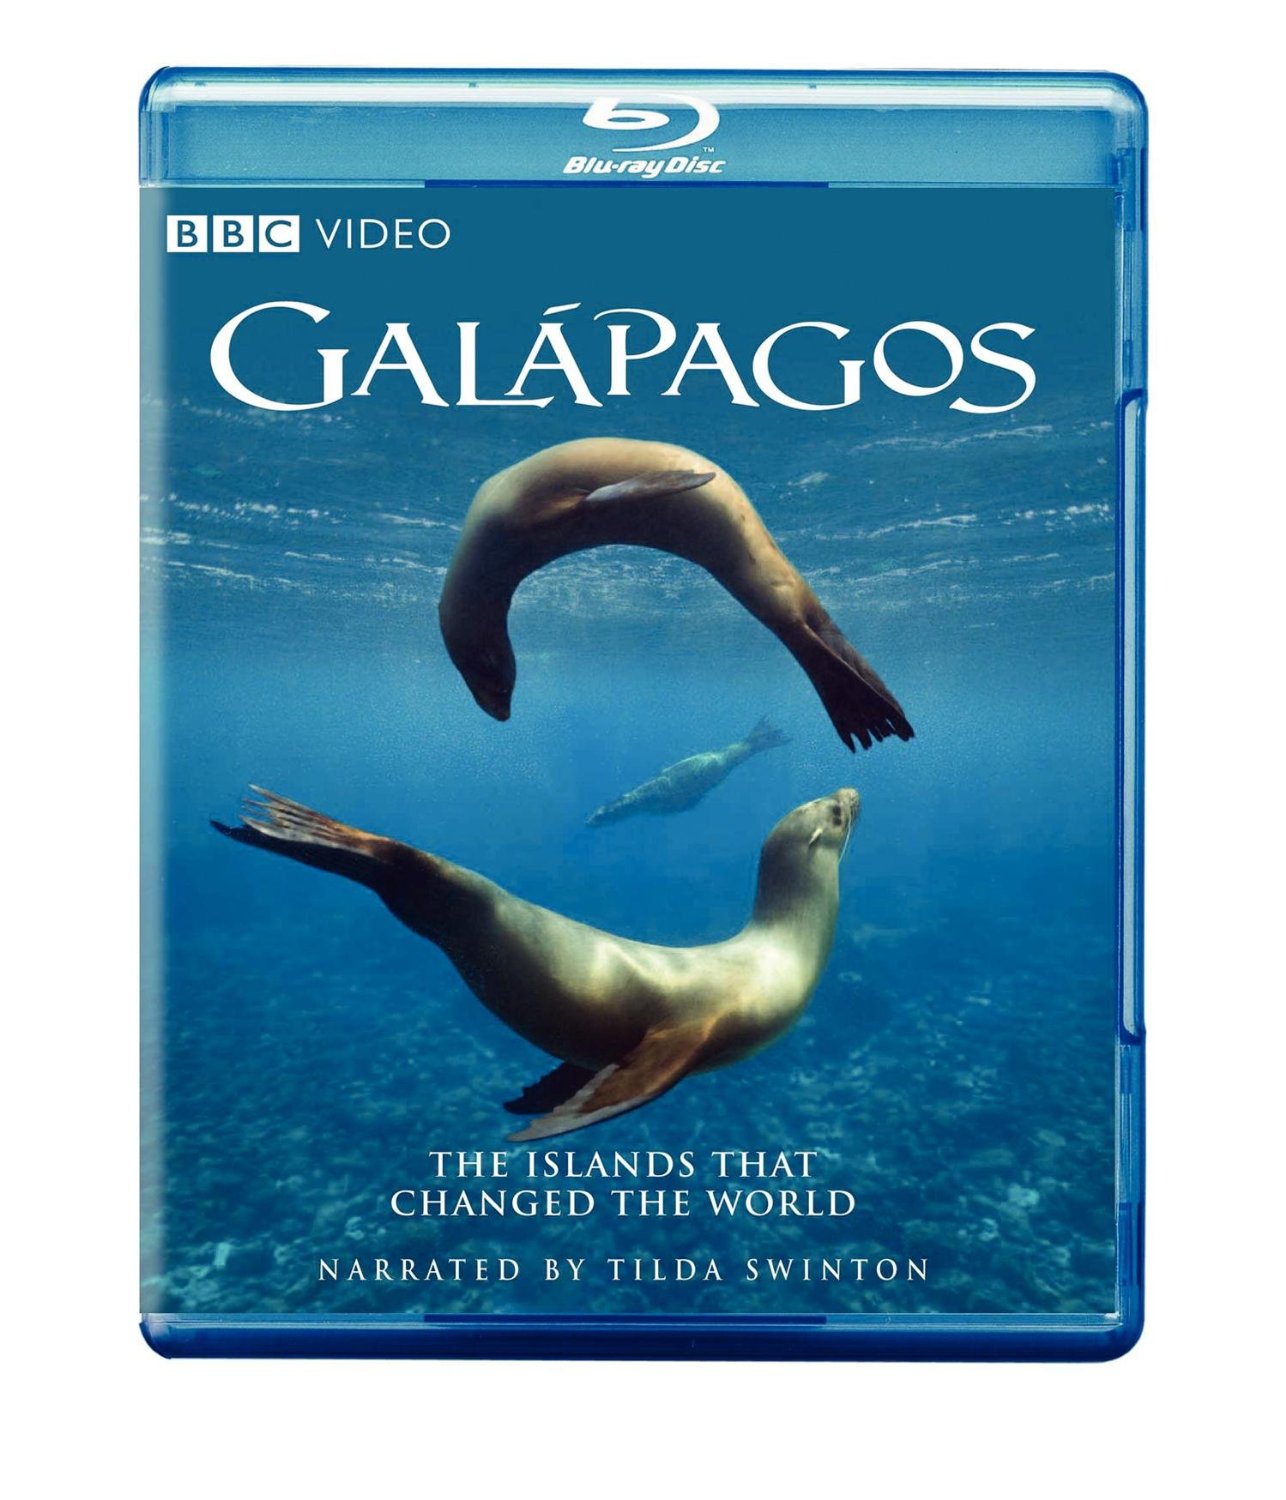 Galapagos Islands DVD